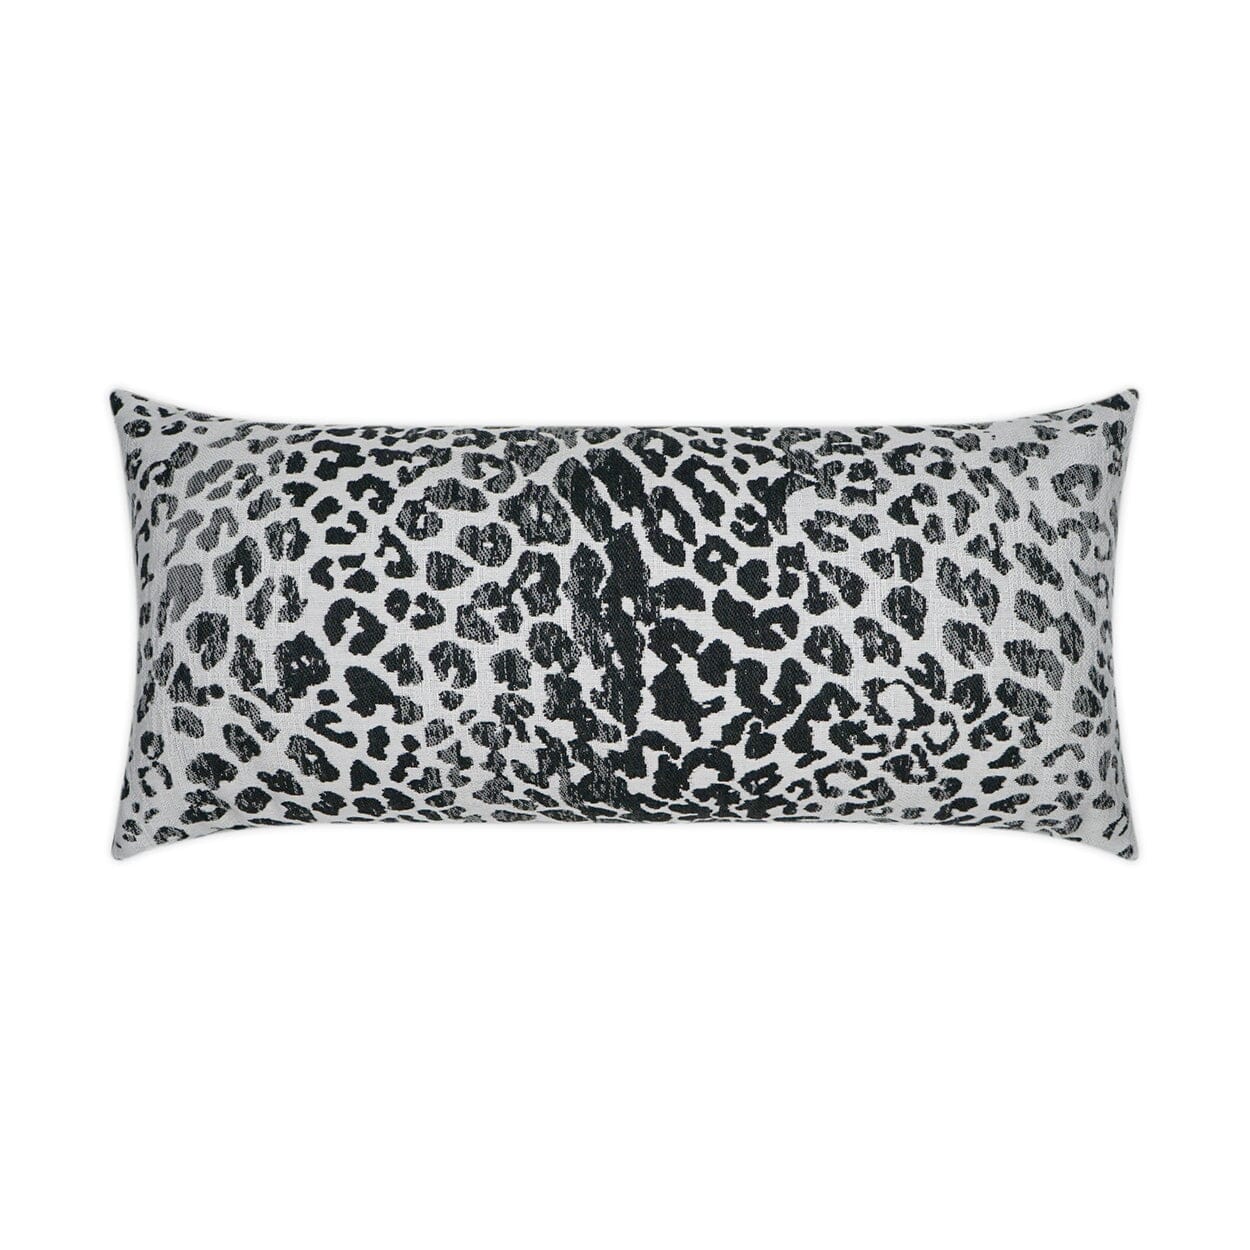 D.V. Kap 12" x 24" Outdoor Lumbar Pillow | Katoo Charcoal Pillows D.V Kap Outdoor